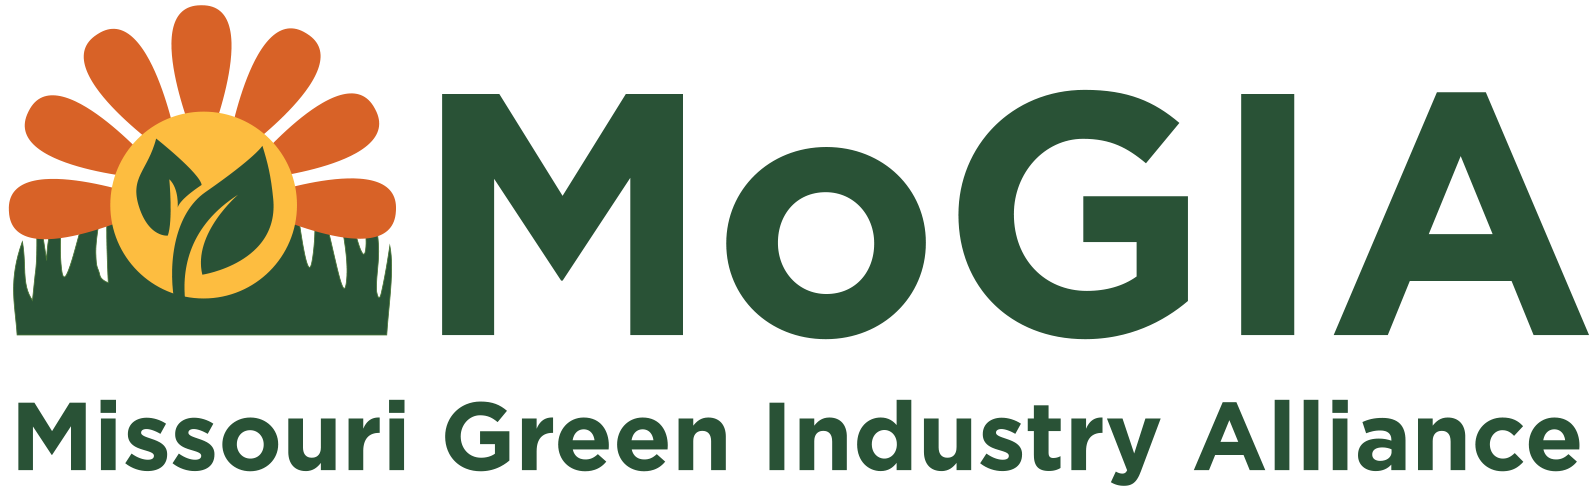 Missouri Green Industry Alliance